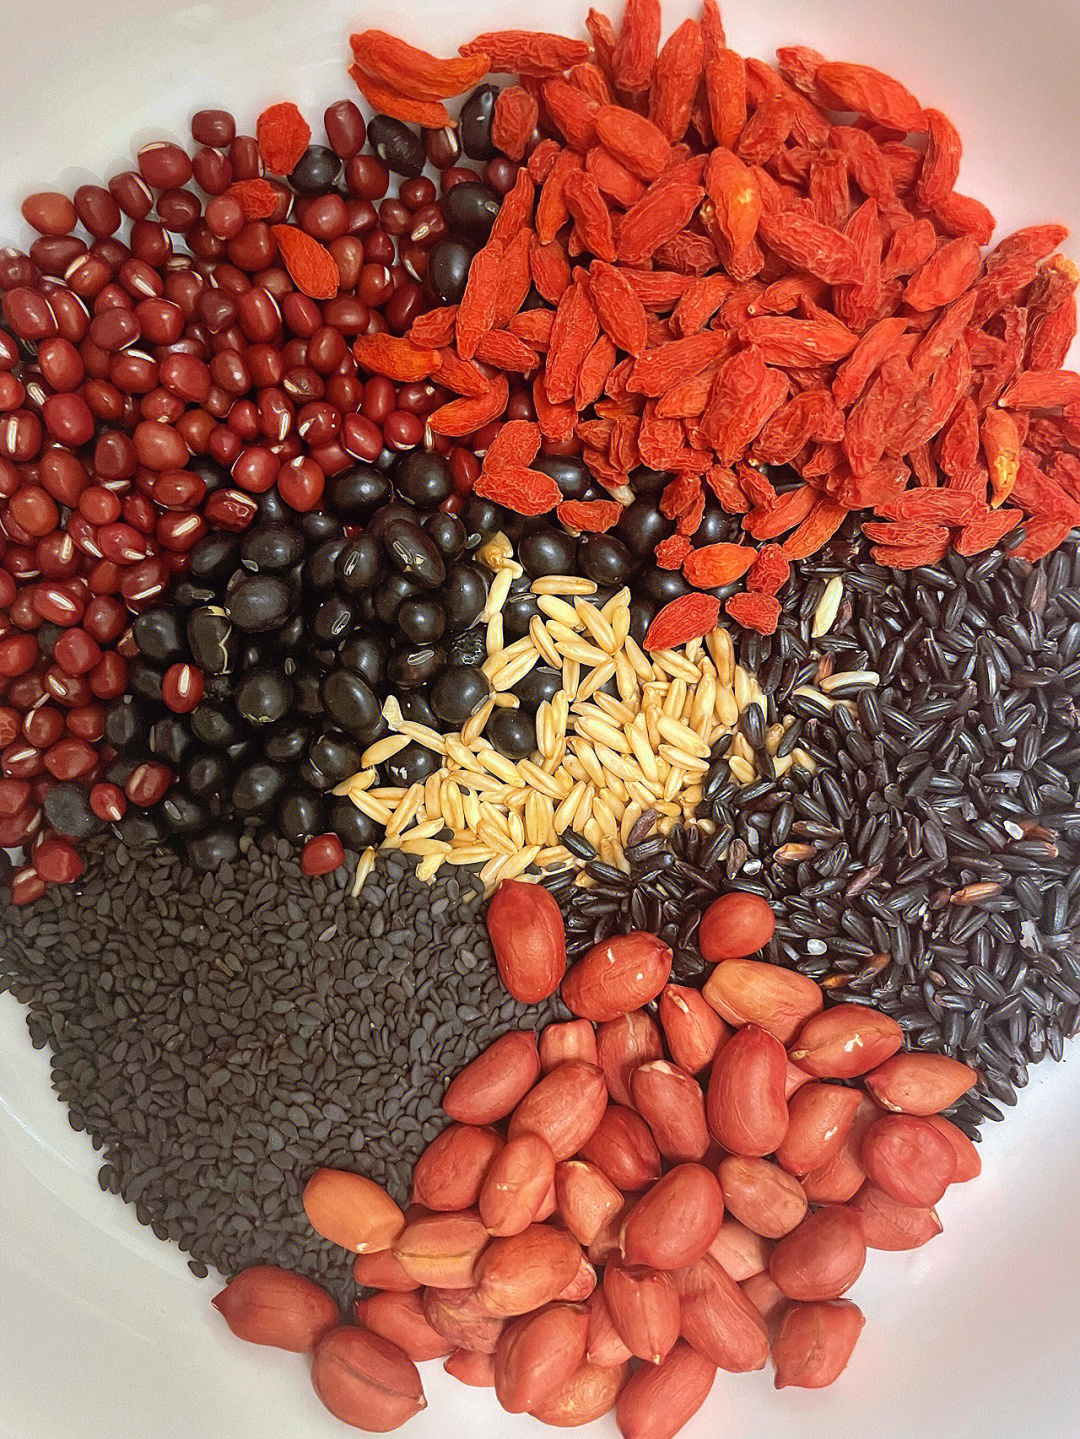 食材:红豆,黑豆,黑米,黑芝麻,花生,小麦,枸杞,红枣,红糖做法:食材洗净